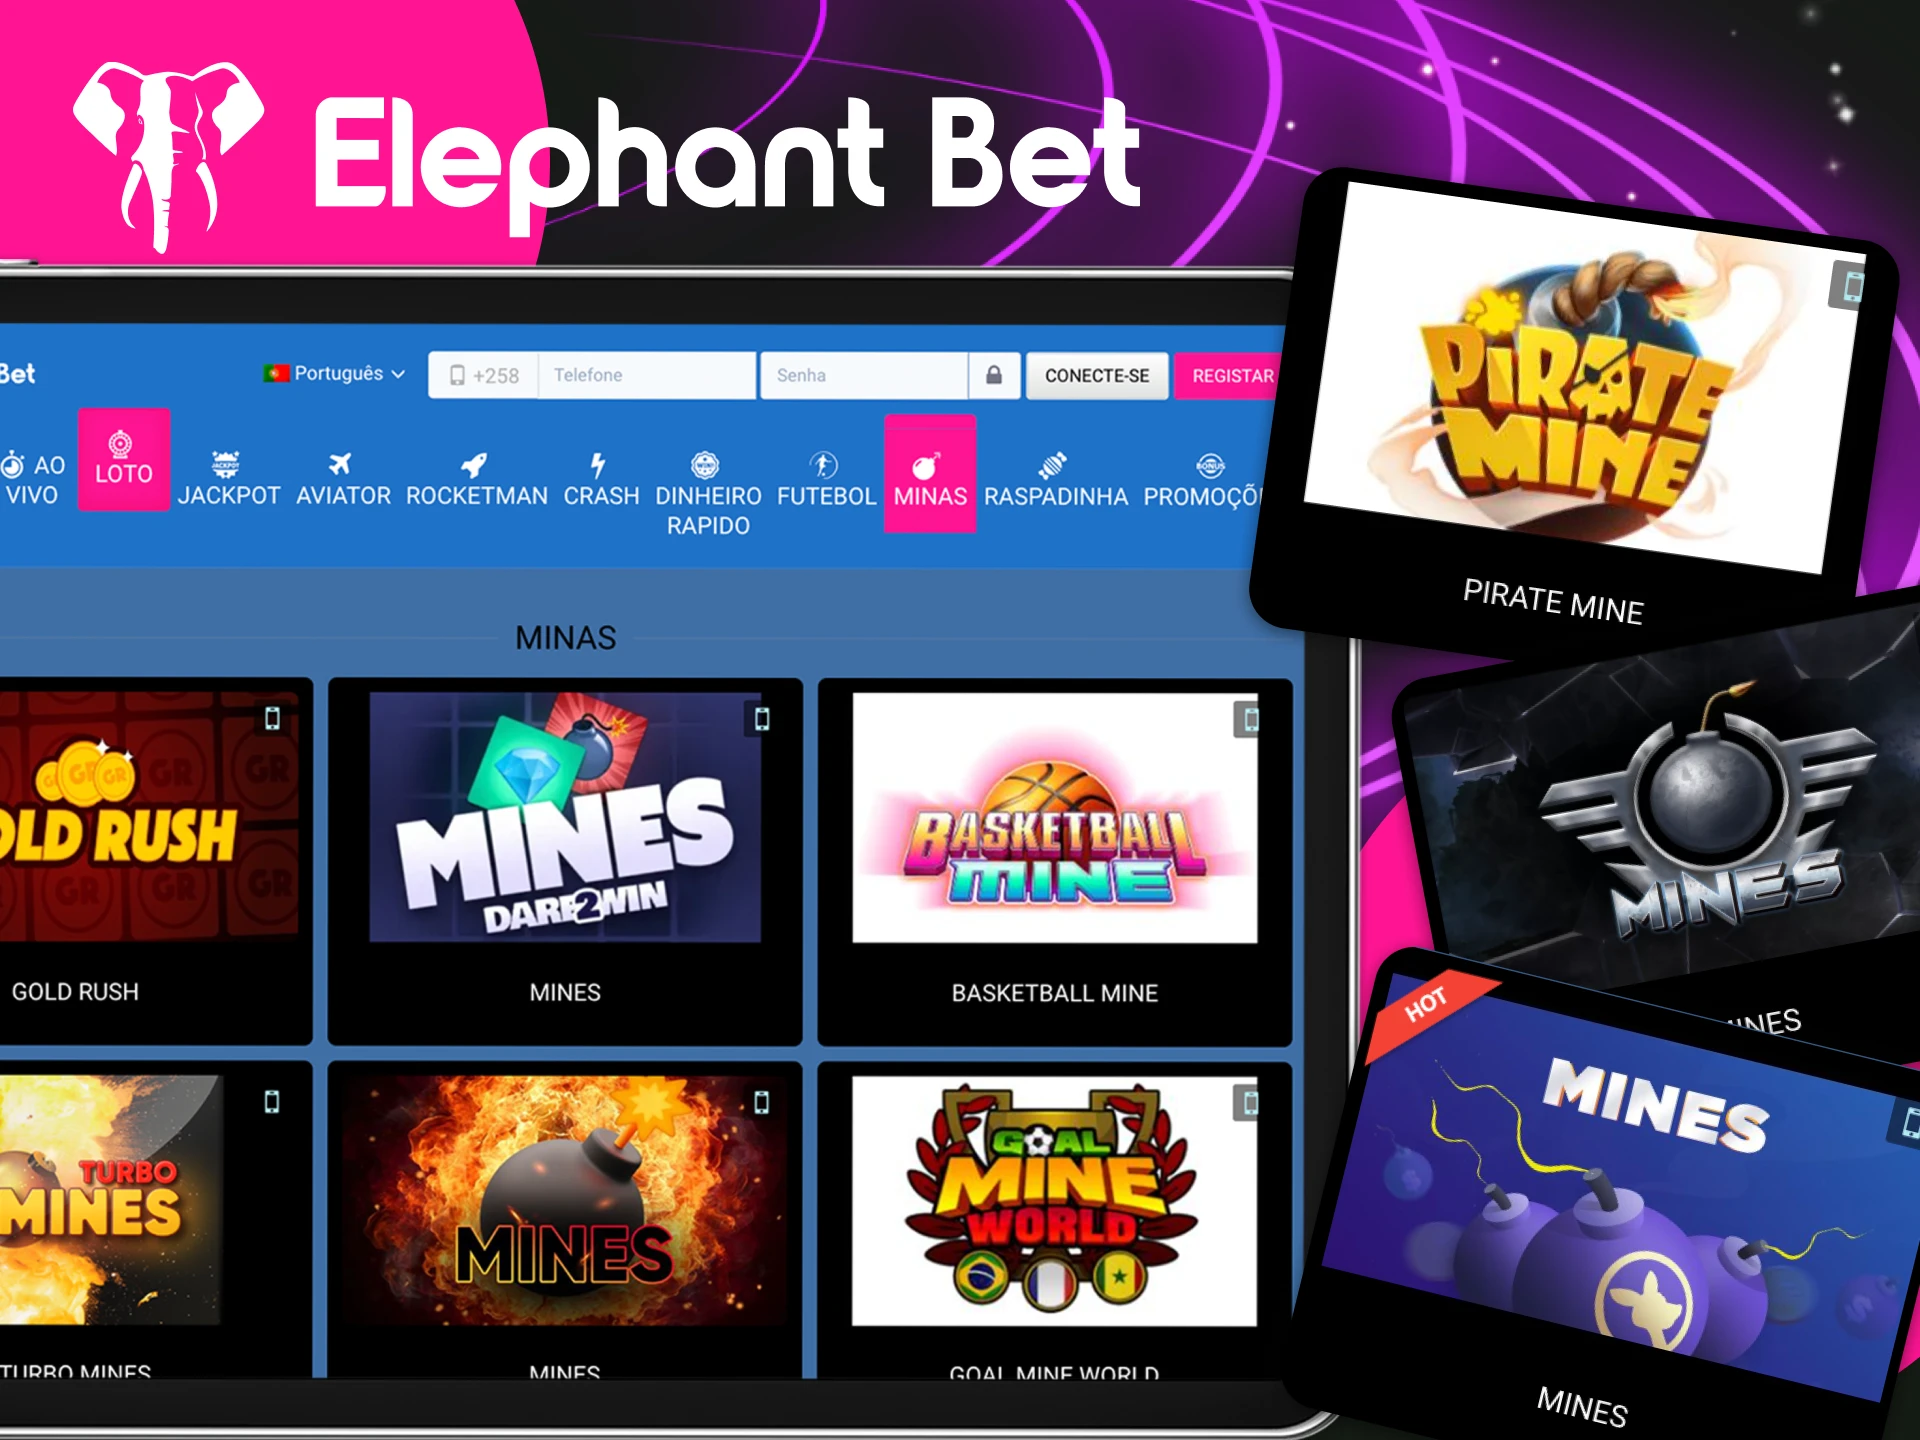 O que preciso fazer no jogo Minas no site do cassino online Elephant Bet.